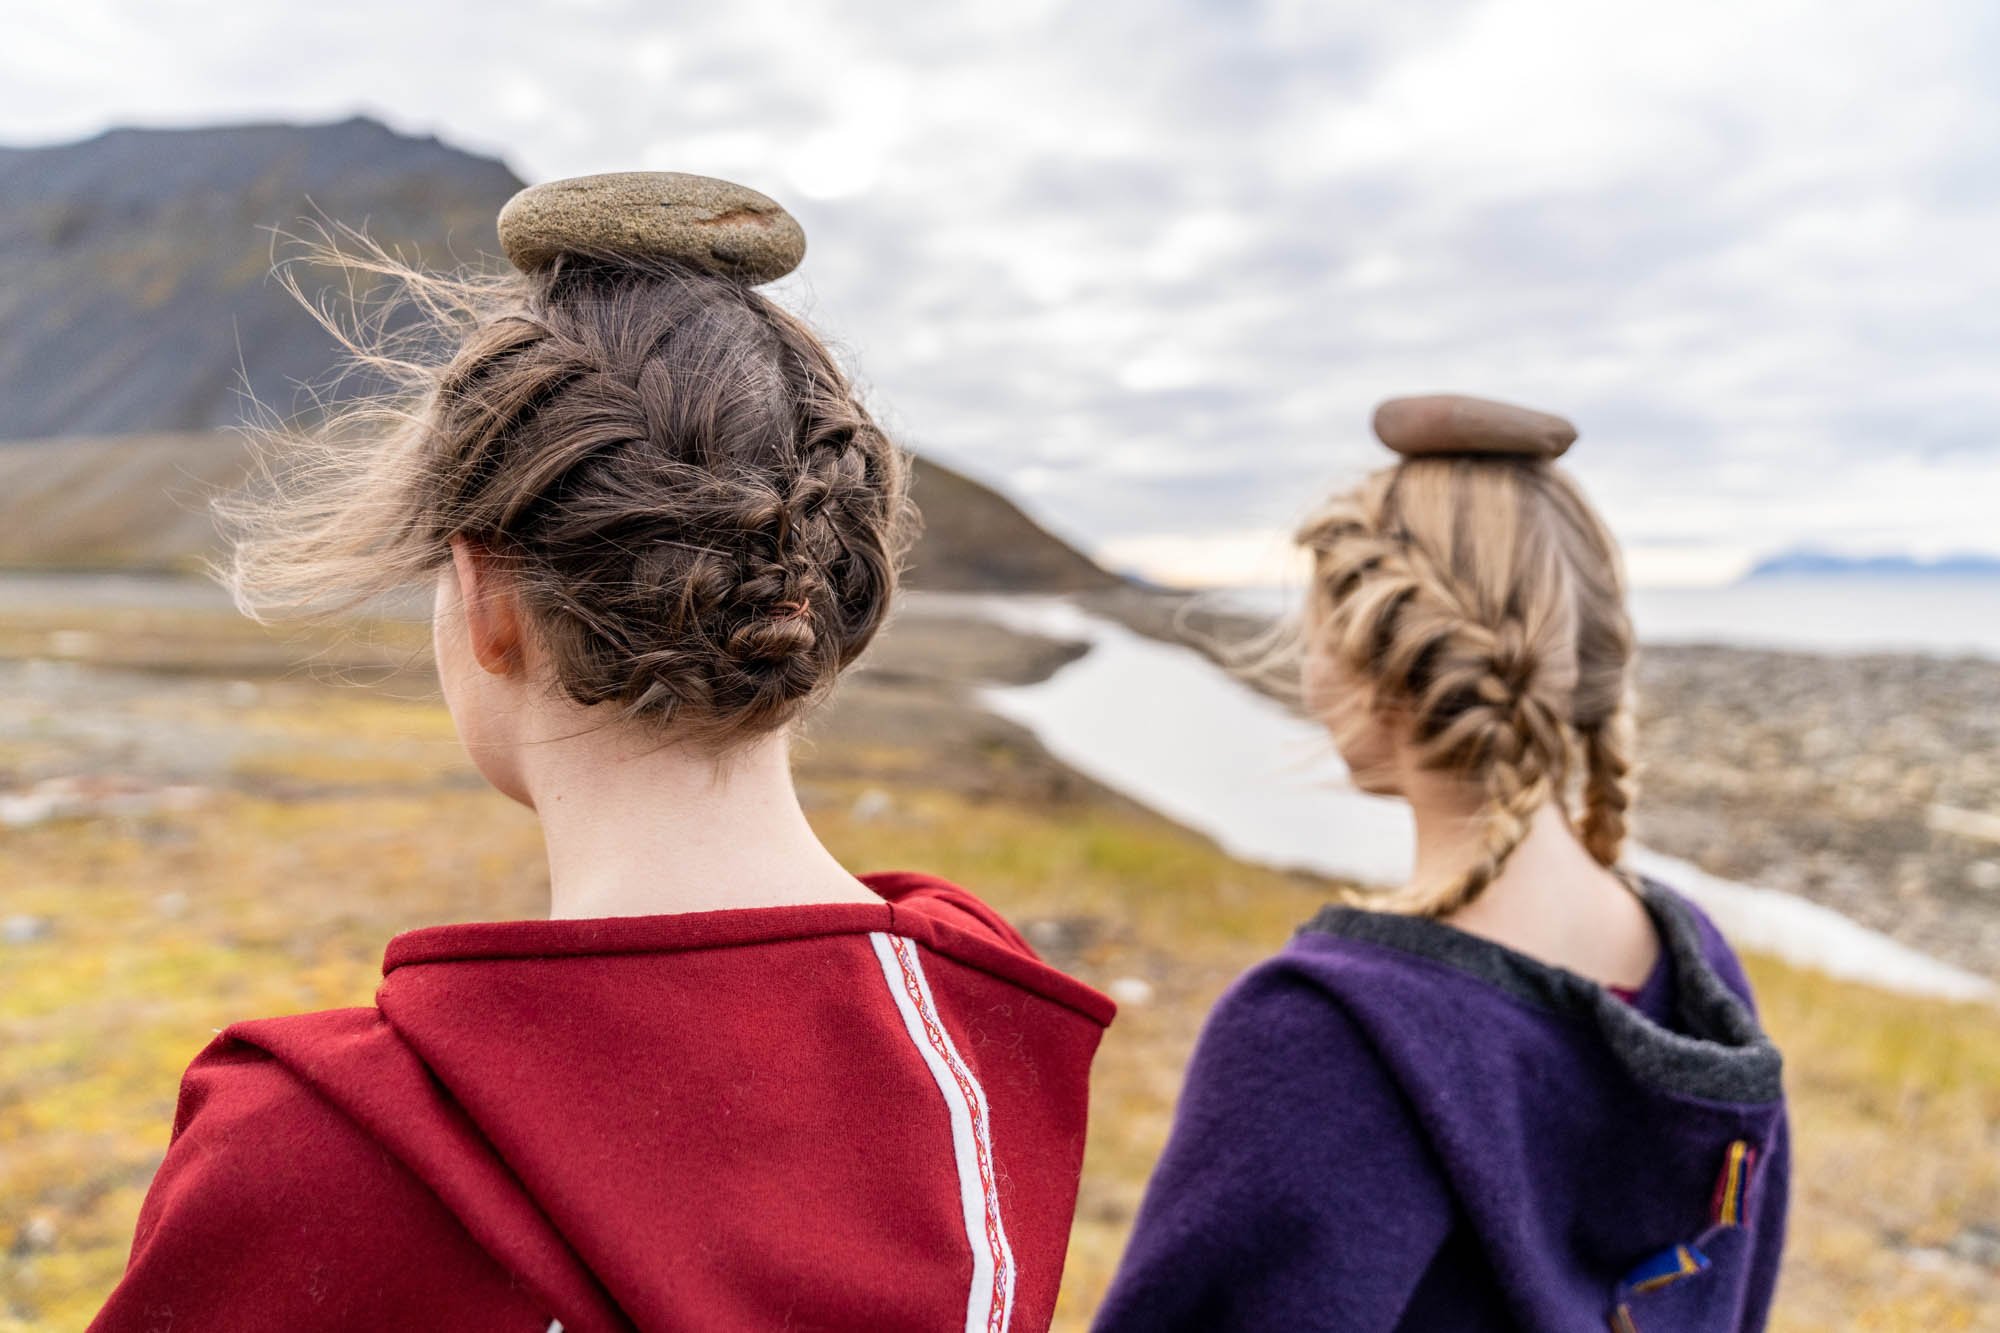  Ramona Salo og Katarina Skår Lisa på Svalbard under kunstnerresidens ved Artica Svalbard. Foto: Tom Warner 